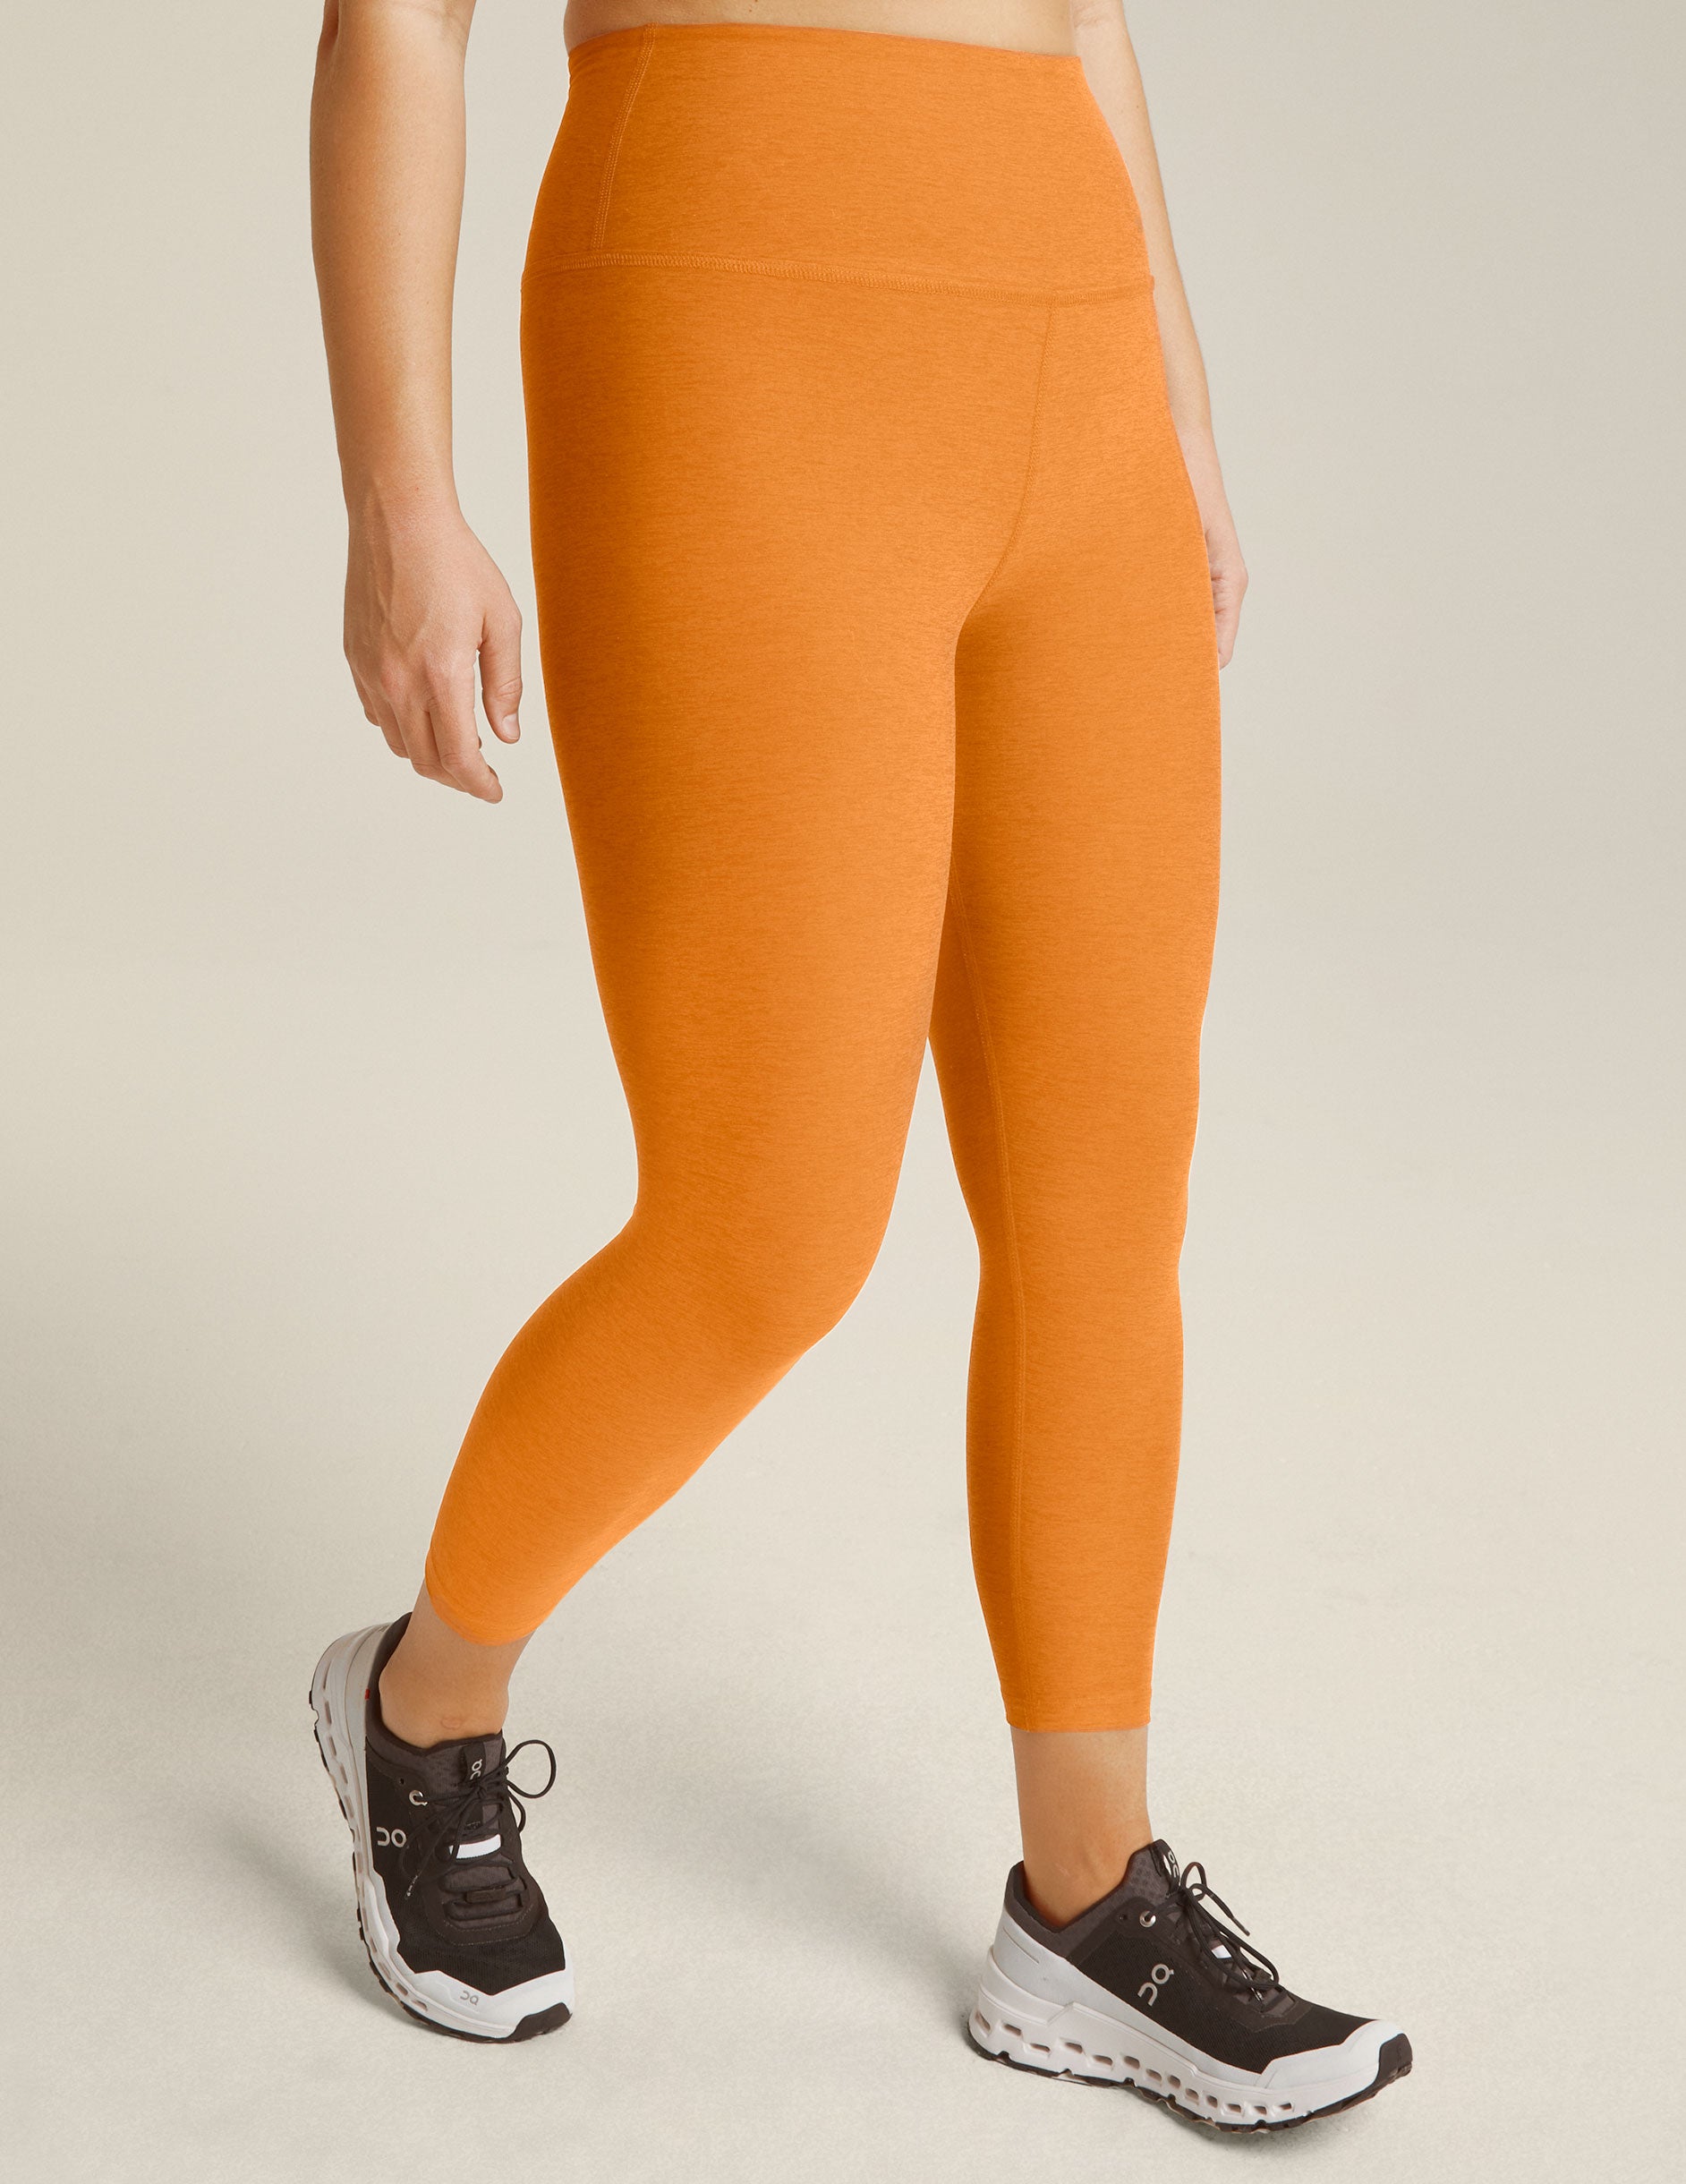 orange high-waisted capri legging